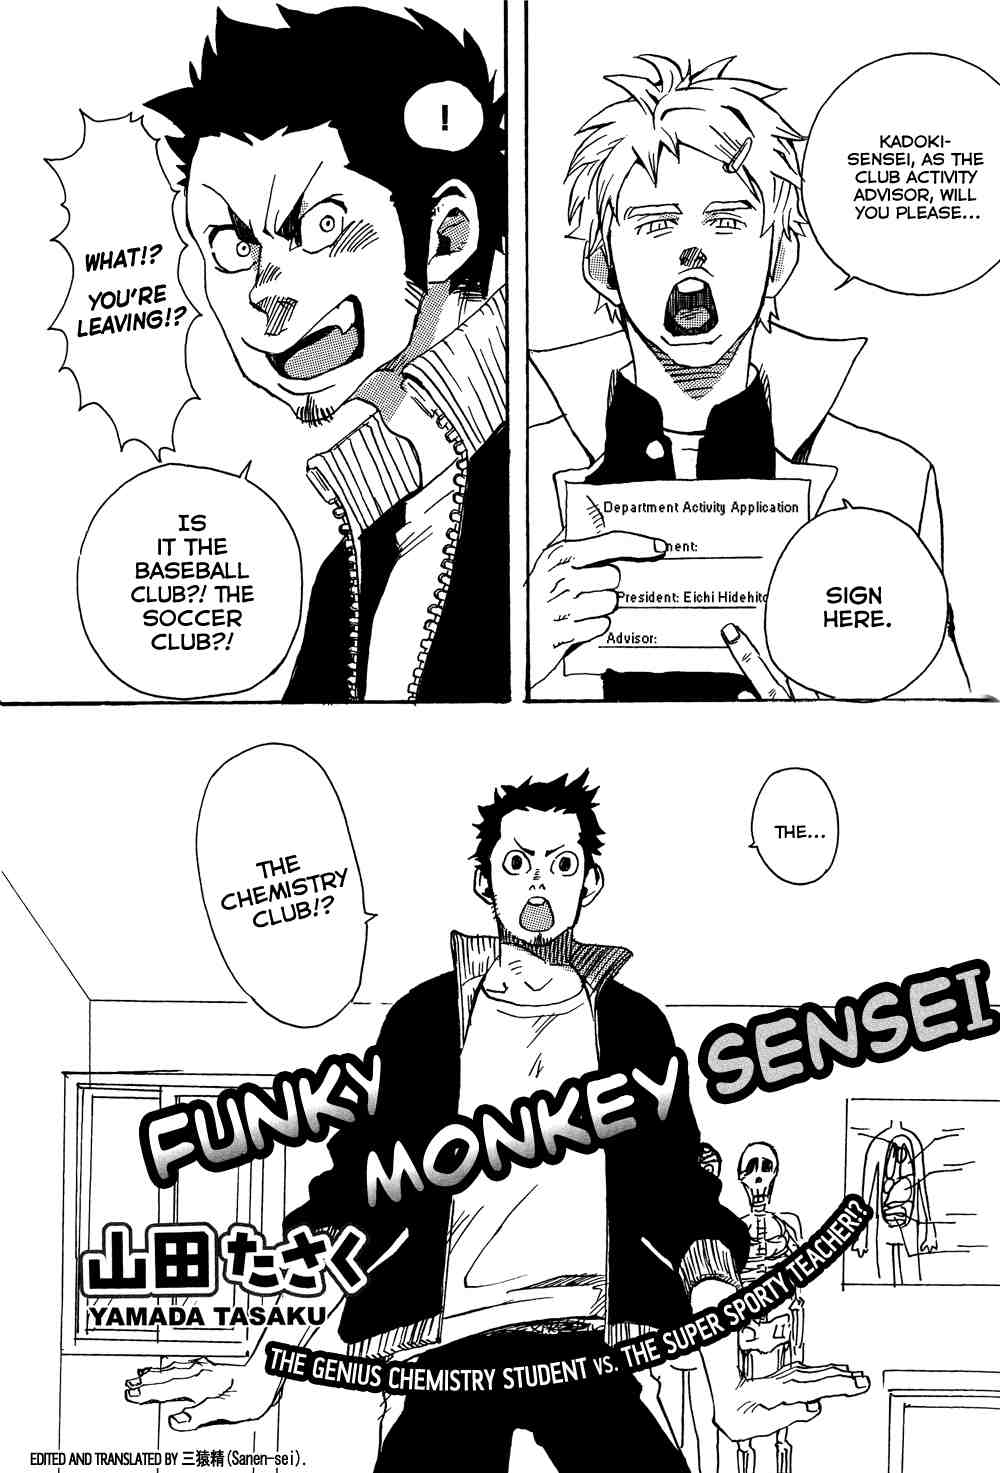 [Yamada Tasaku] Funky Monkey Sensei [Eng] page 1 full